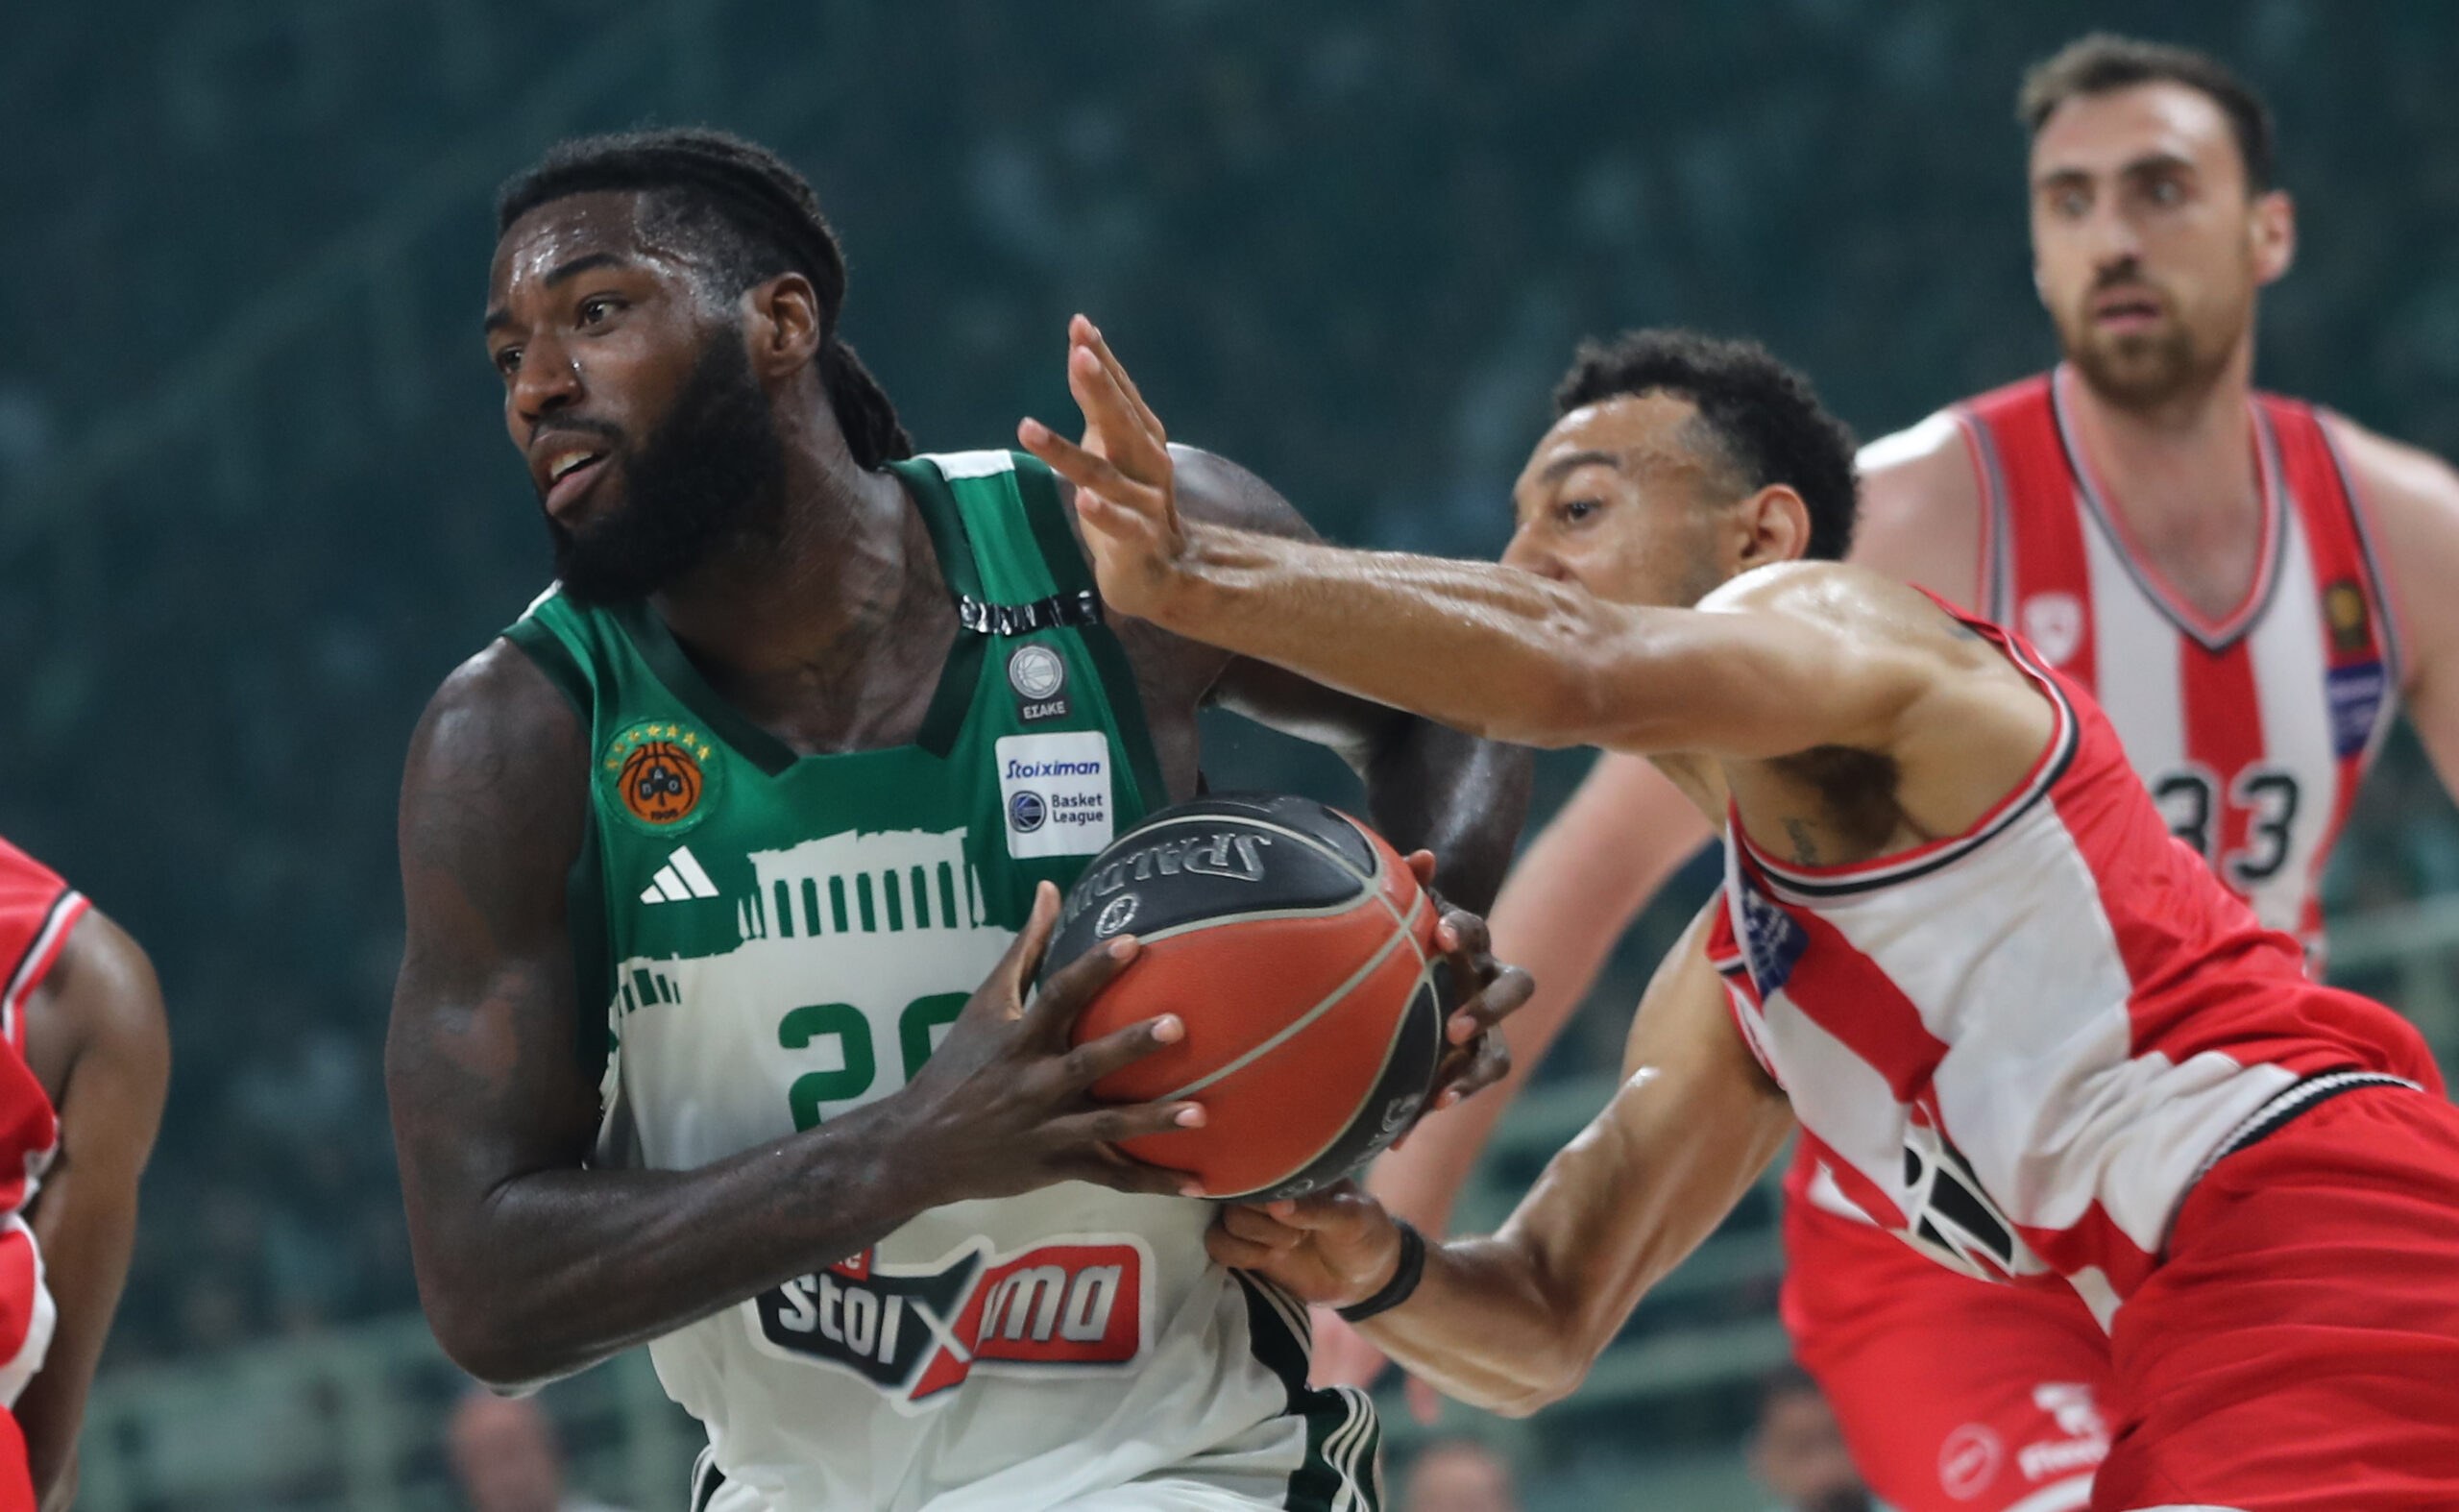 Παναθηναϊκός - Ολυμπιακός 83-76: Πράσινη αντίδραση και επιστροφή στο ΣΕΦ για τους τελικούς της Stoiximan Basket League